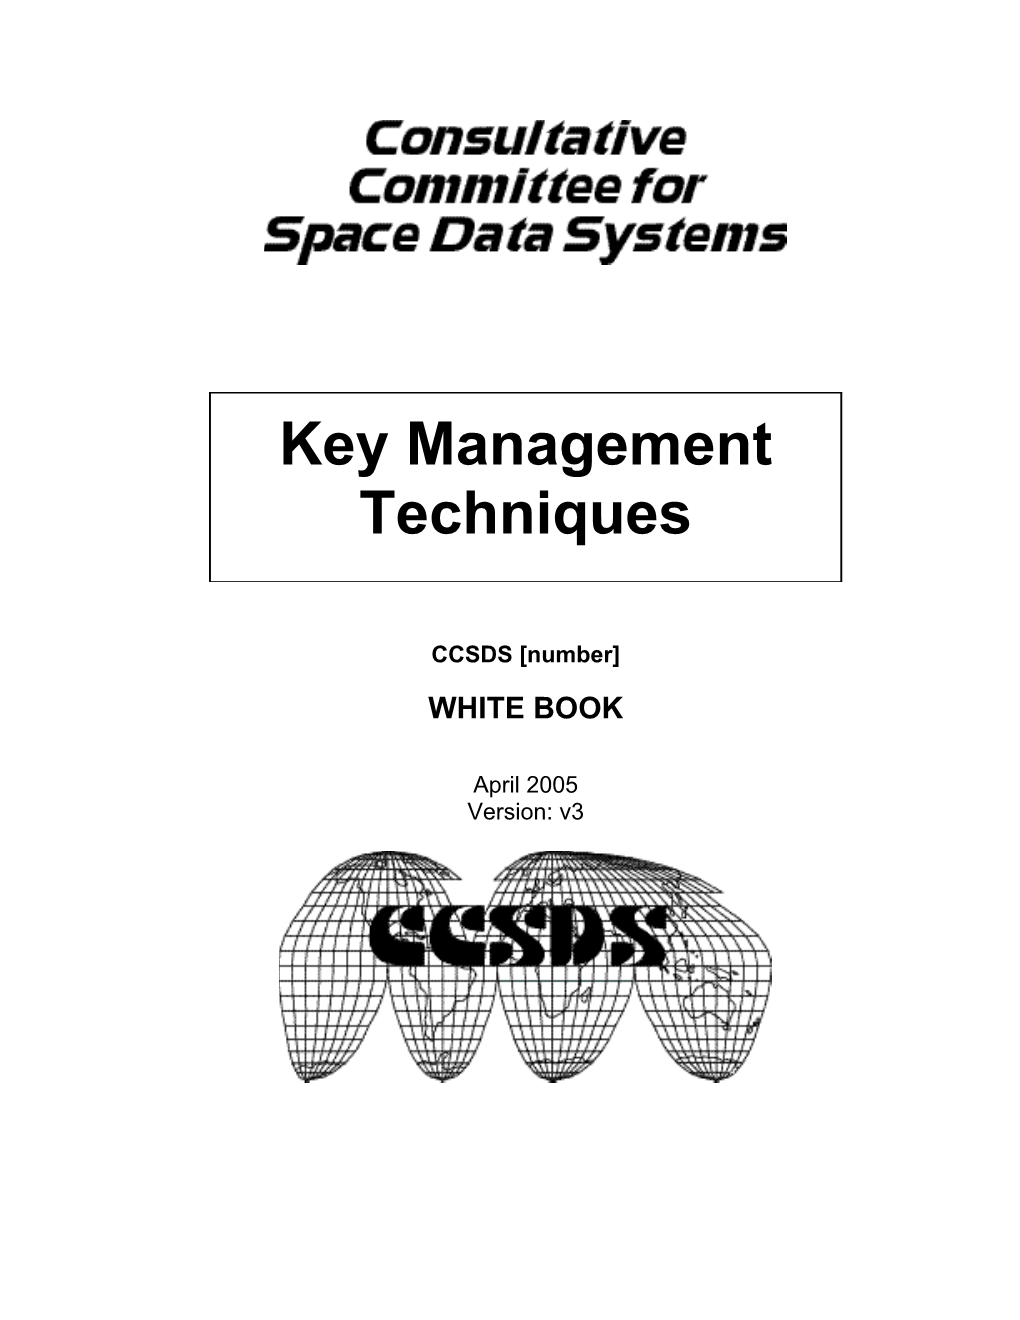 CCSDS Key Management Techniques